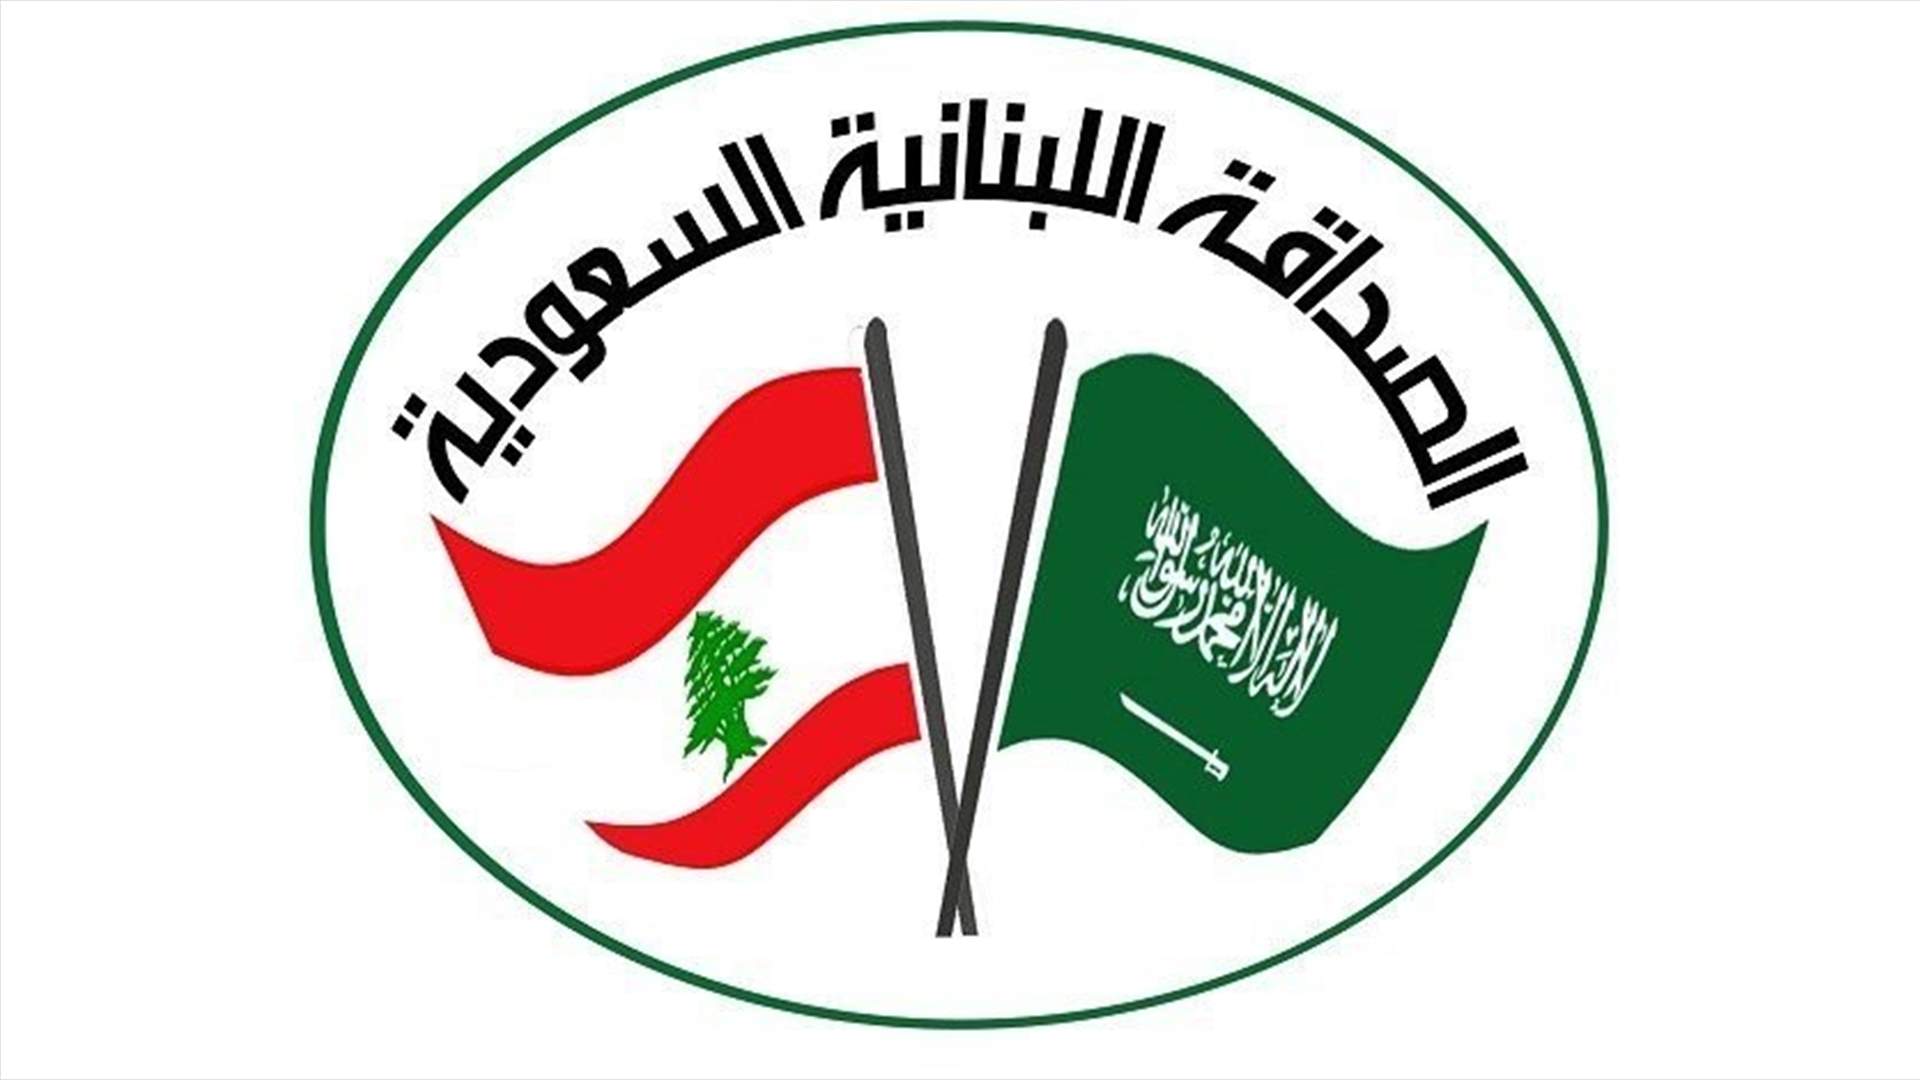 جمعية الصداقة اللبنانية السعودية: لبنان لم ينته طالما دستوره قائم والحل بتطبيقه أولا